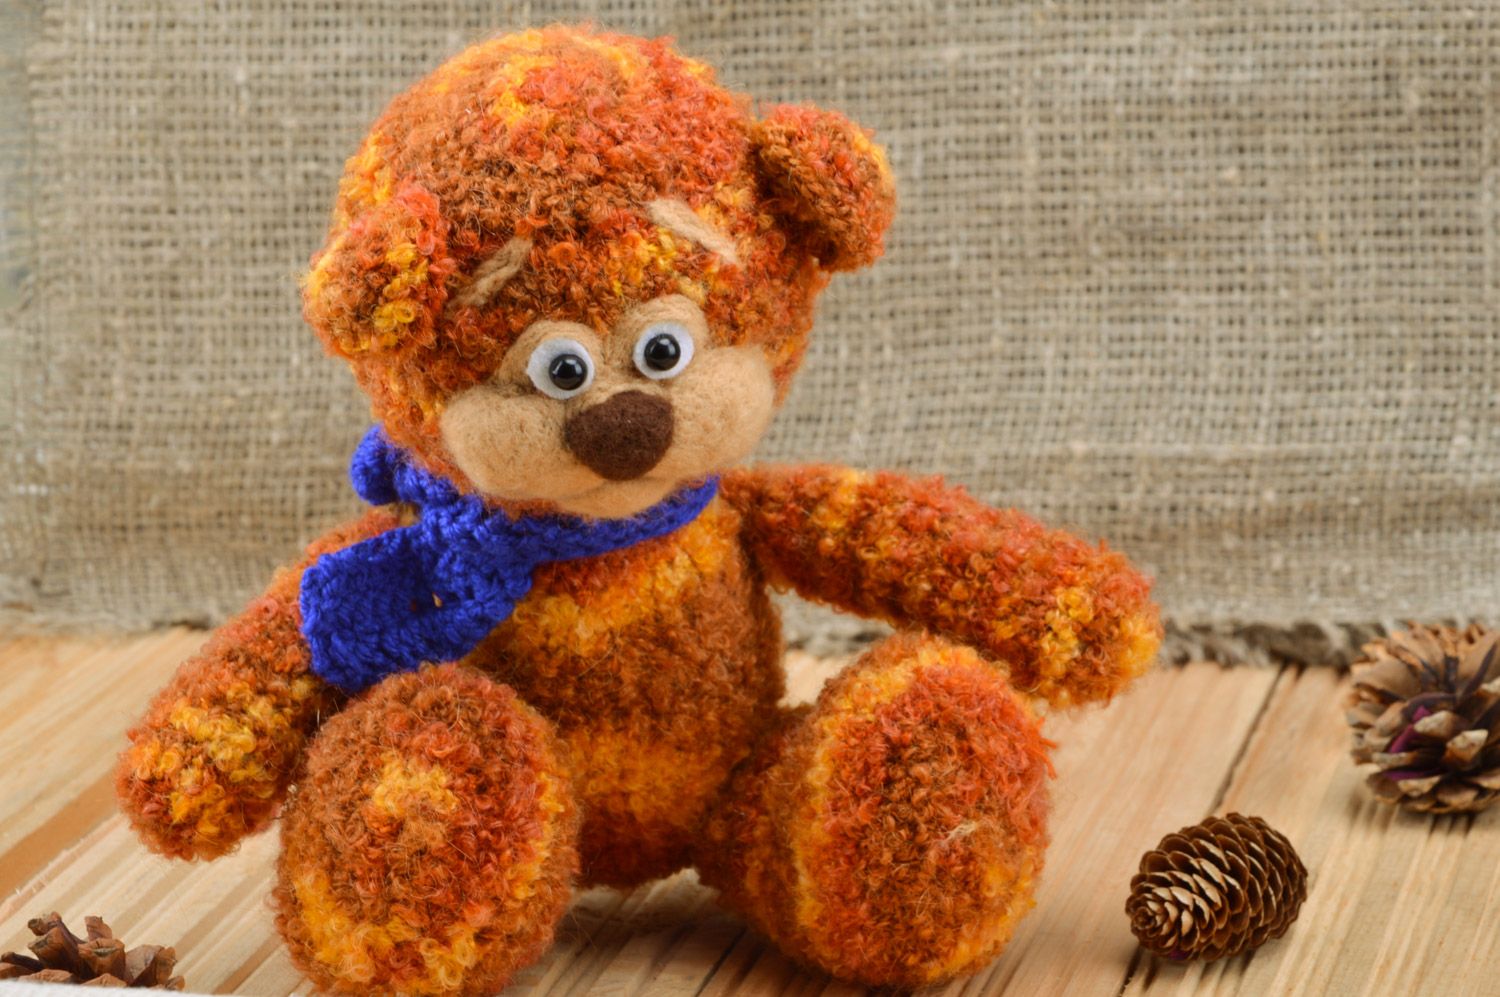 Jouet mou tricoté au crochet fait main pour enfant Ours brun avec écharpe bleue photo 1